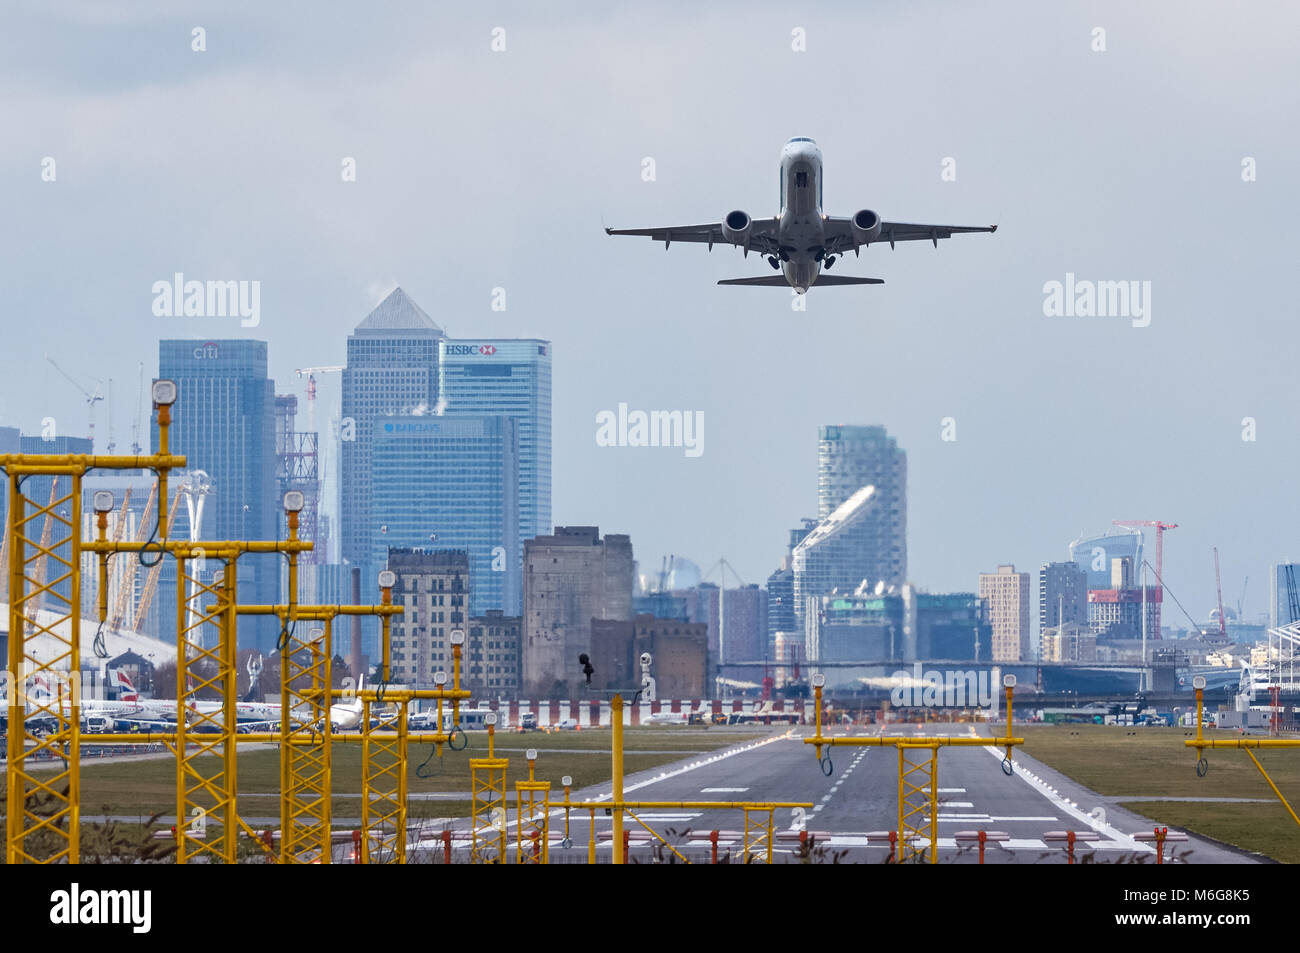 L'avion de ligne dédécollage à l'aéroport de London City, Londres Angleterre Royaume-Uni Banque D'Images